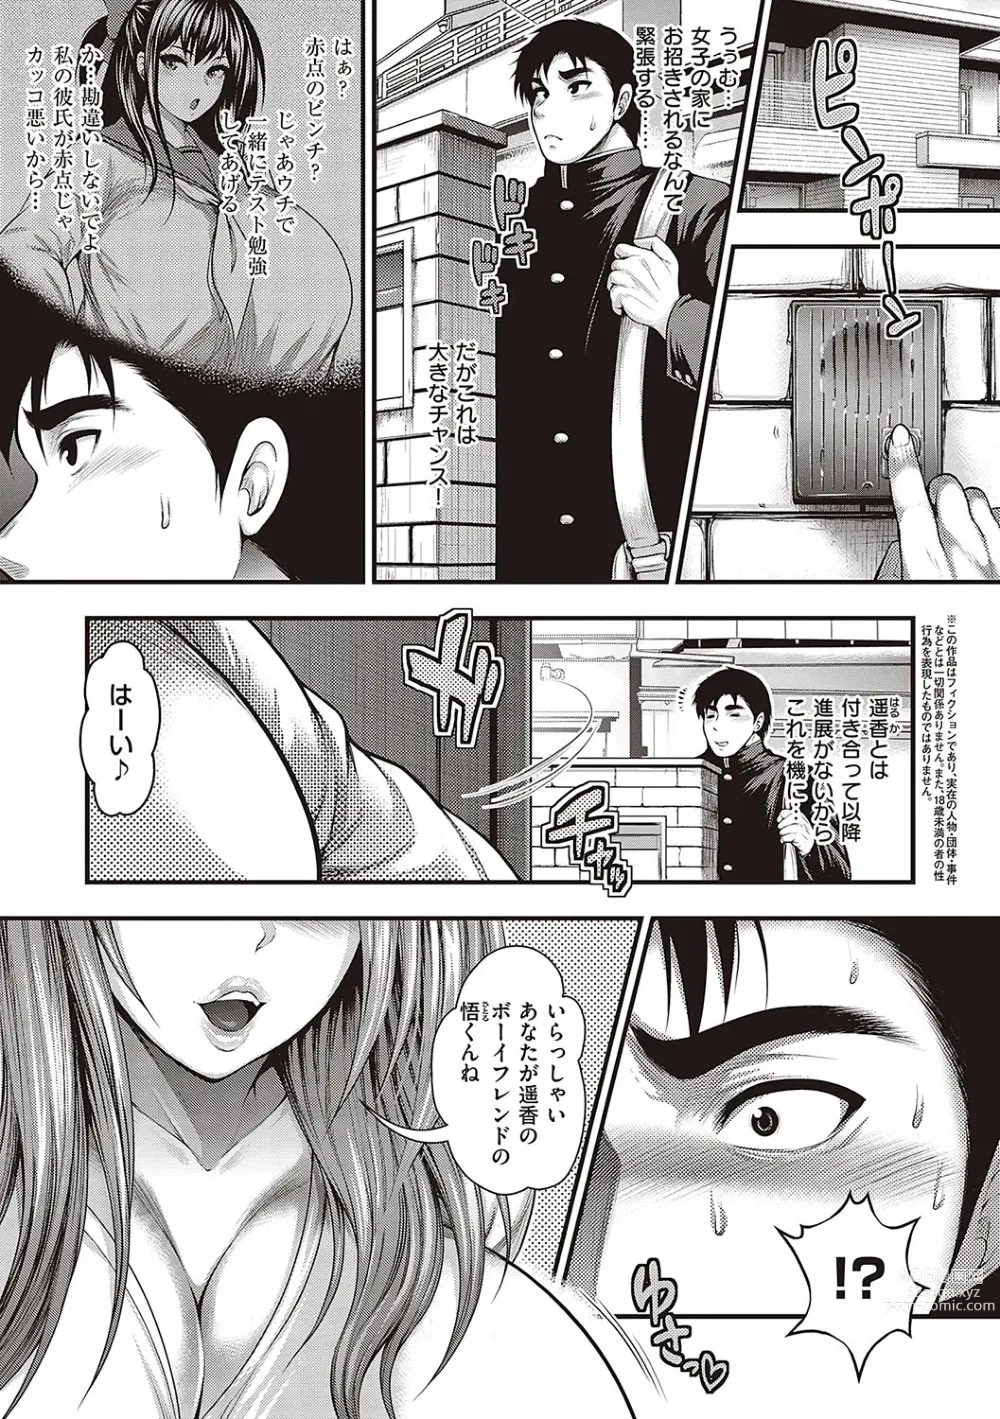 Page 4 of manga Arigatou, Kami Chichi.